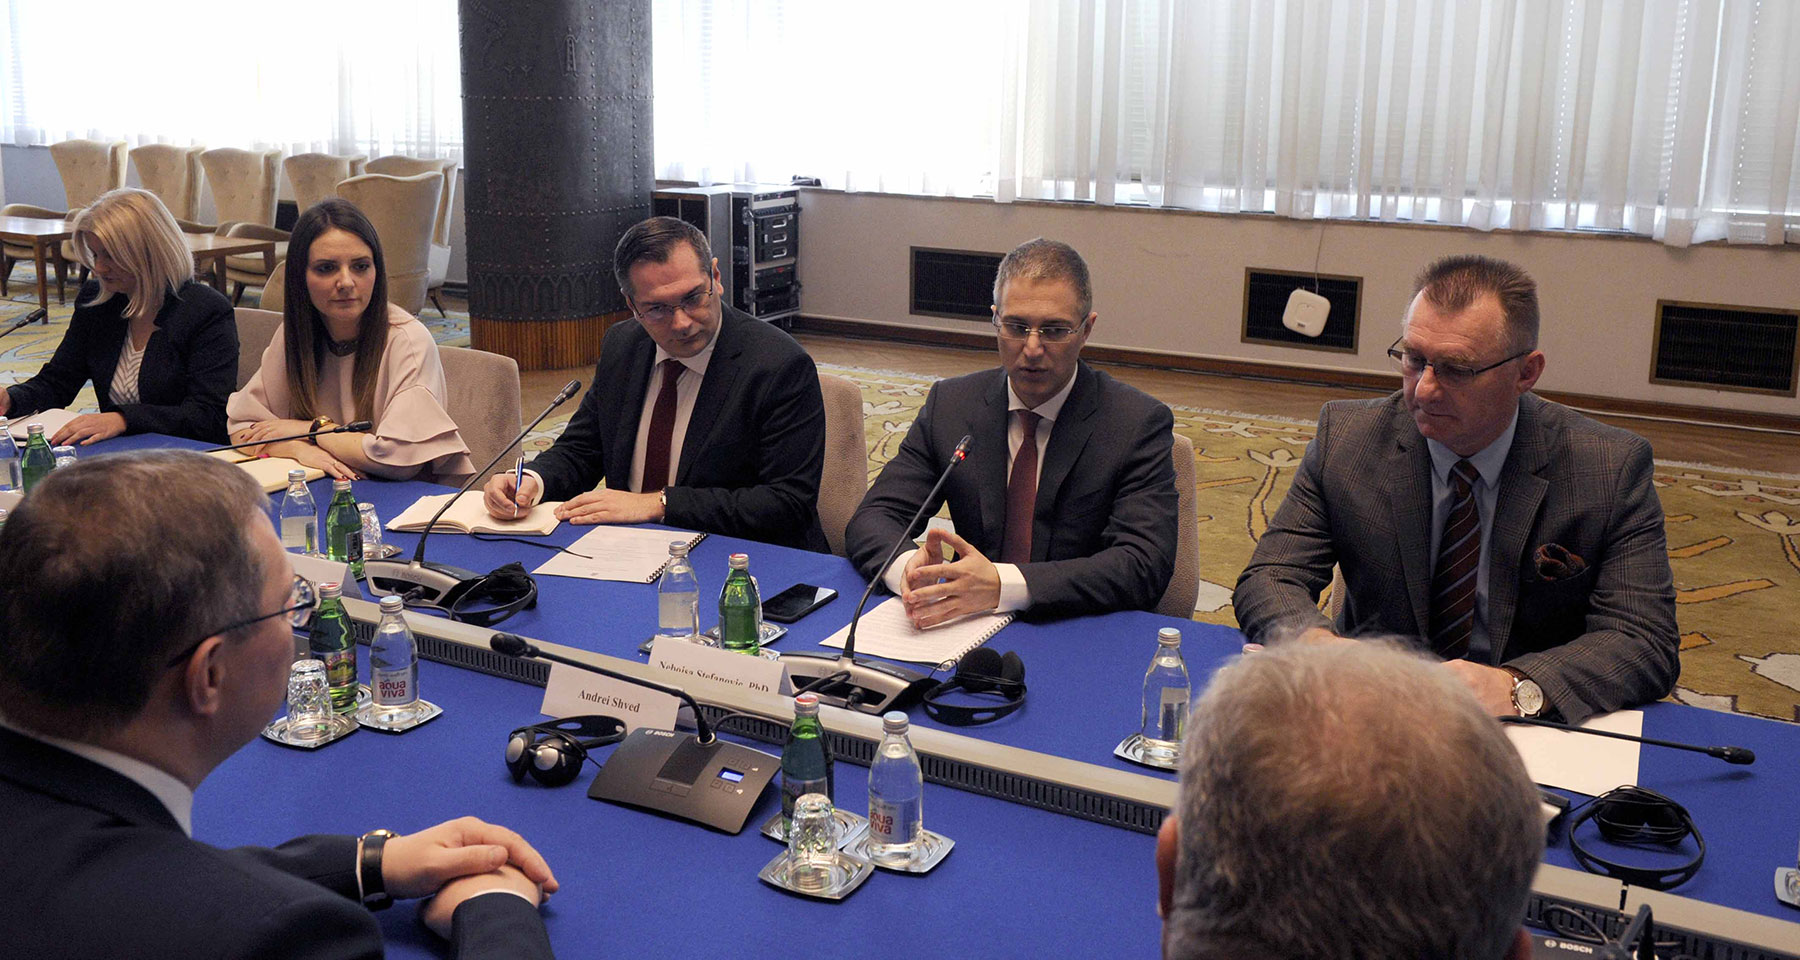 Sporazum o saradnji u oblasti forenzičke delatnosti između MUP-a Republike Srbije i Državnog komiteta za sudsko veštačenje Belorusije